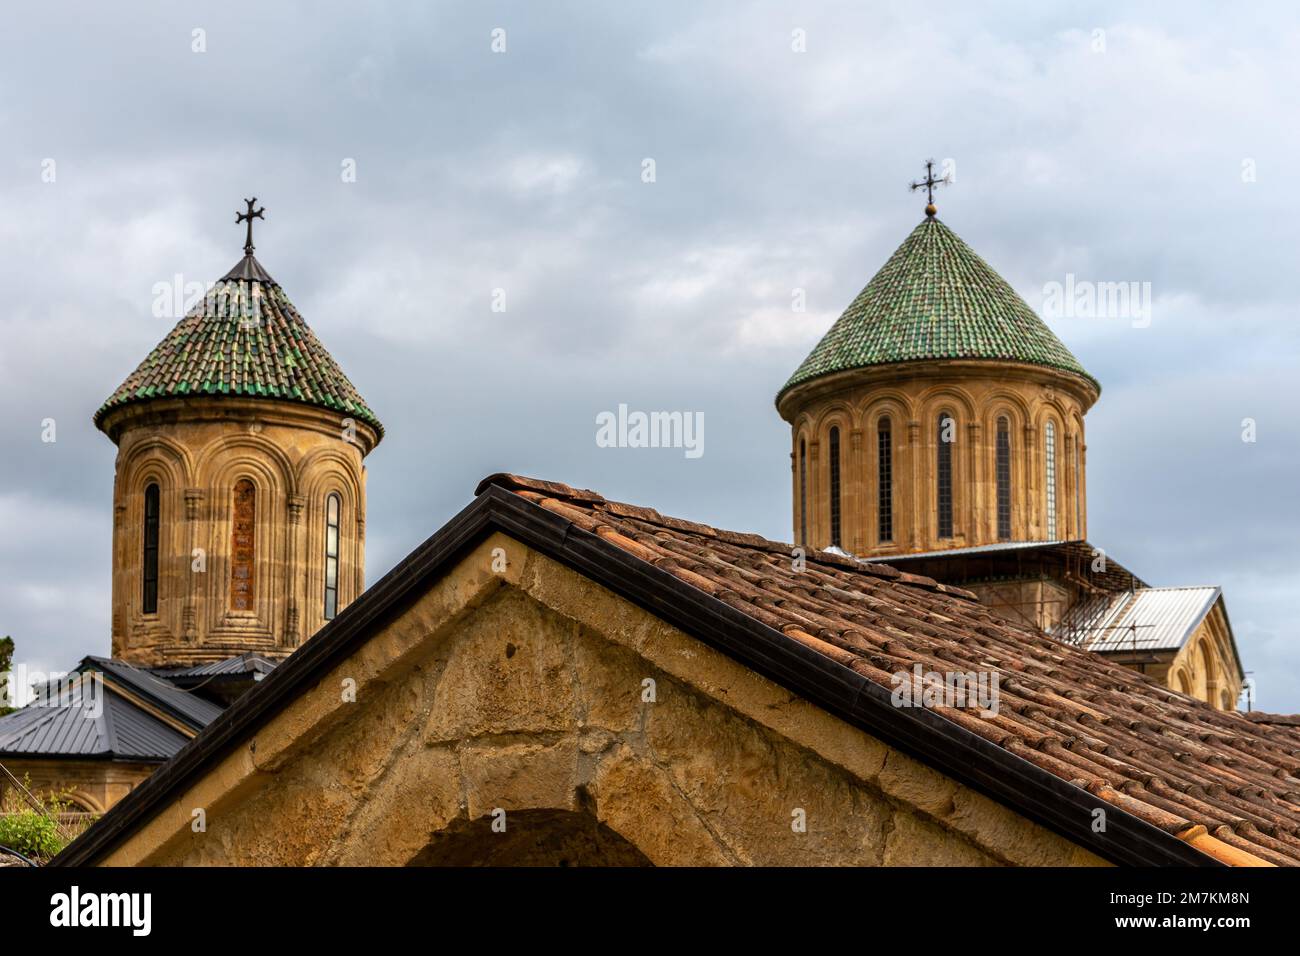 Tours du monastère des gelati, complexe monastique médiéval près de Kutaisi, Géorgie fondée par le roi David IV, église orthodoxe en pierre avec toit de tuiles vertes. Banque D'Images